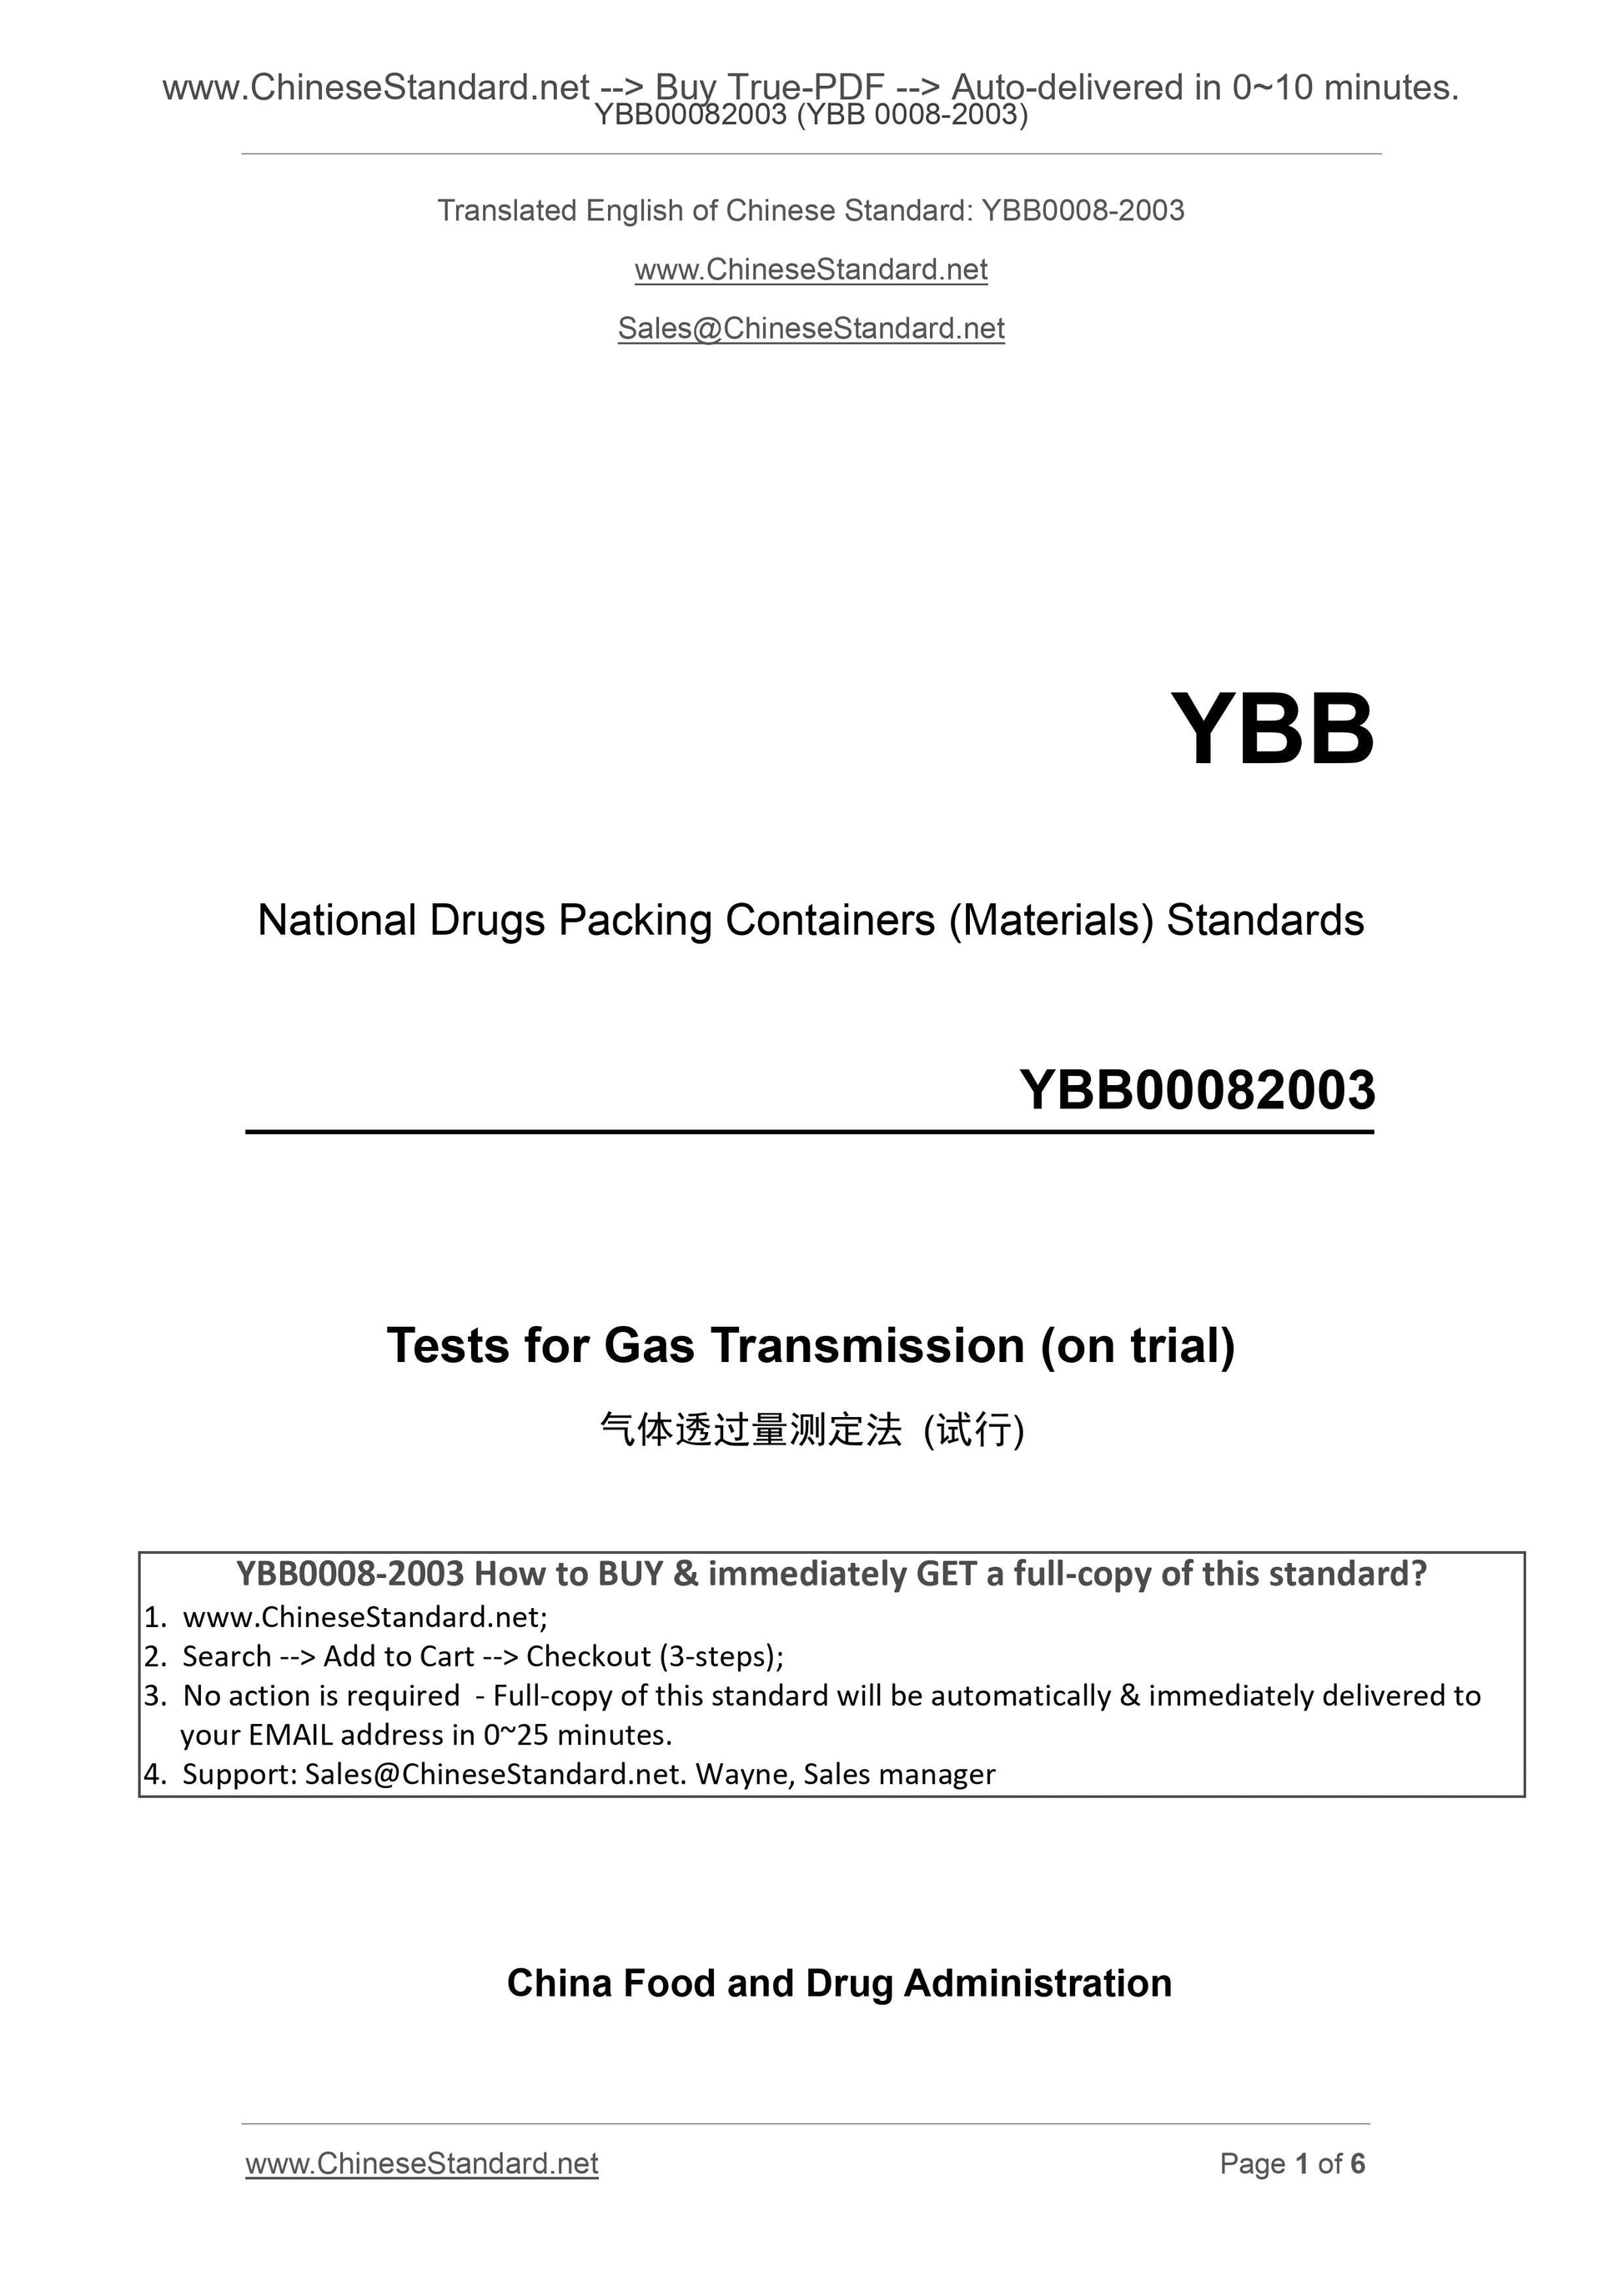 YBB 0008-2003 Page 1